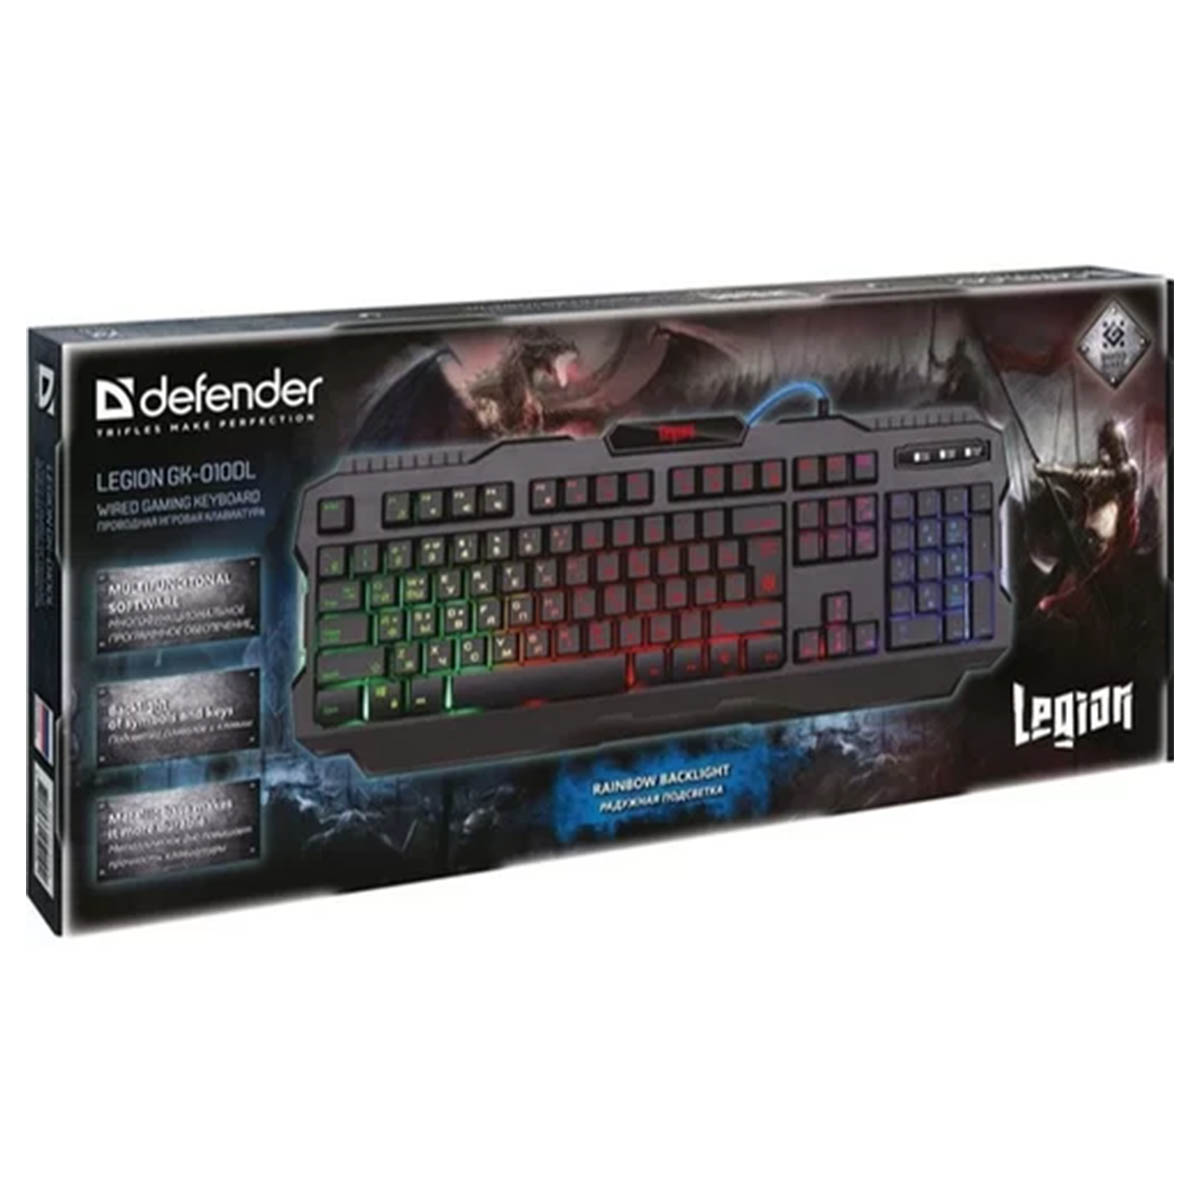 Игровая клавиатура DEFENDER Legion GK-010DL, проводная, подсветка, цвет черный